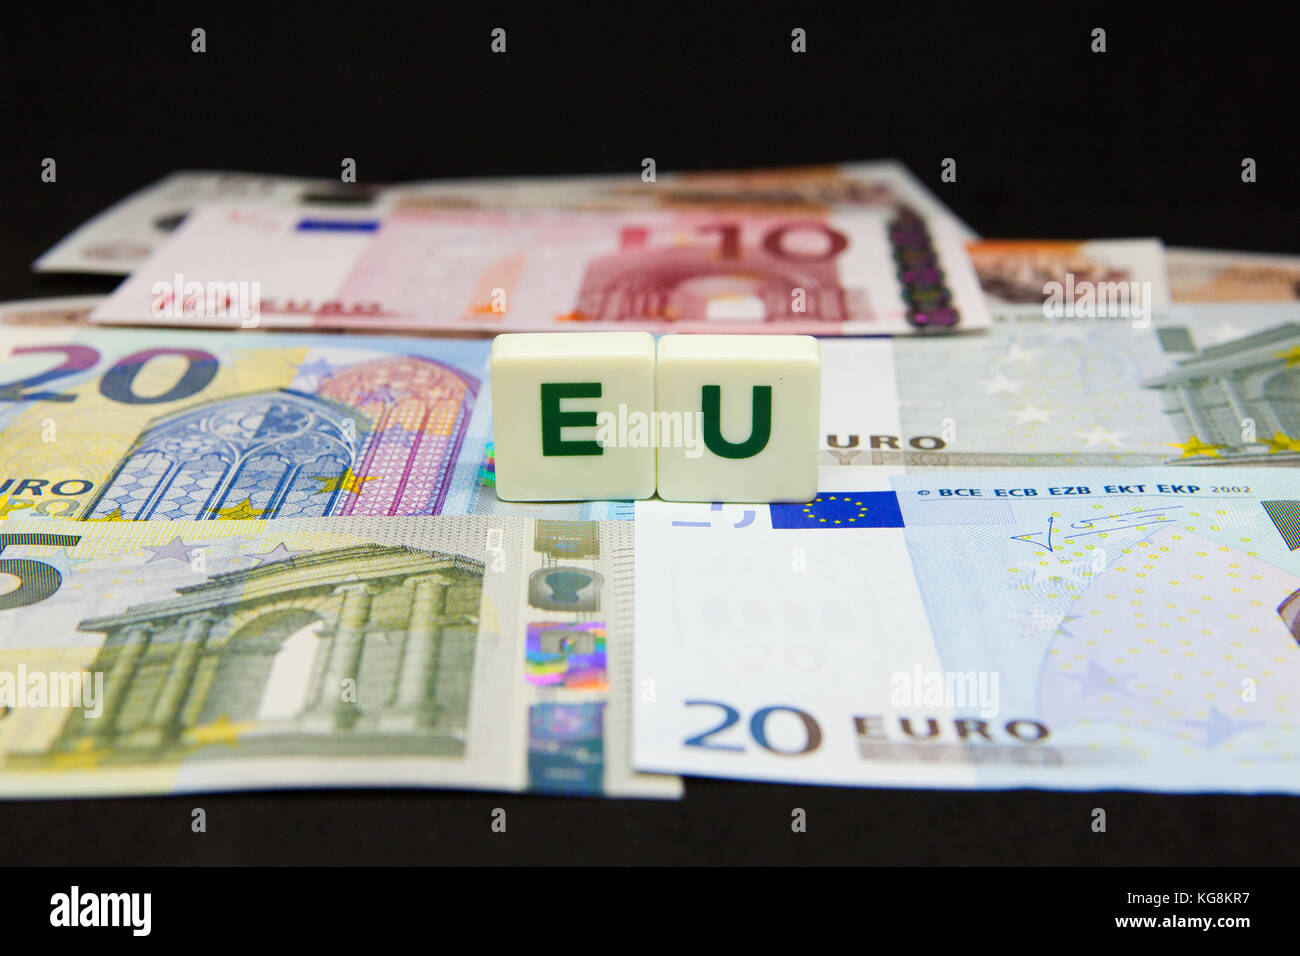 EU and Euro bank notes Stock Photo